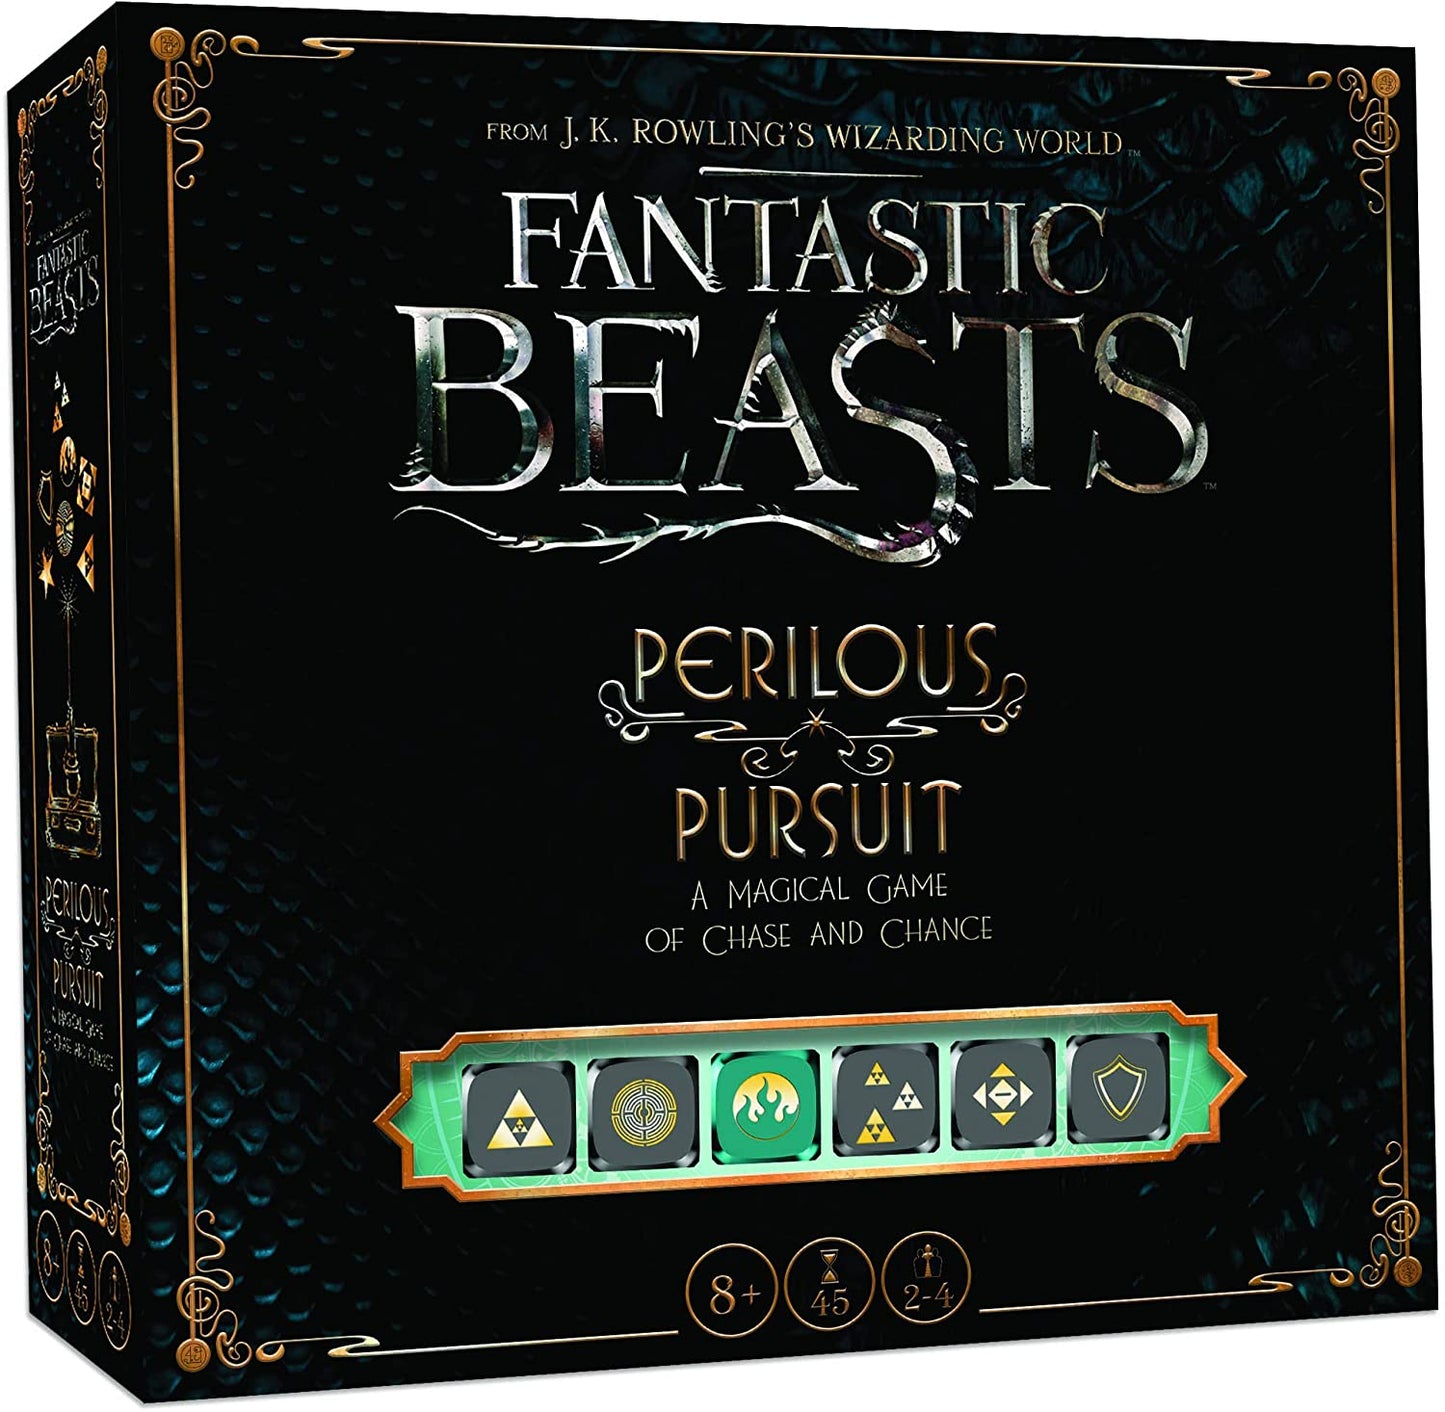 Fantastic Beasts Perilous Pursuit